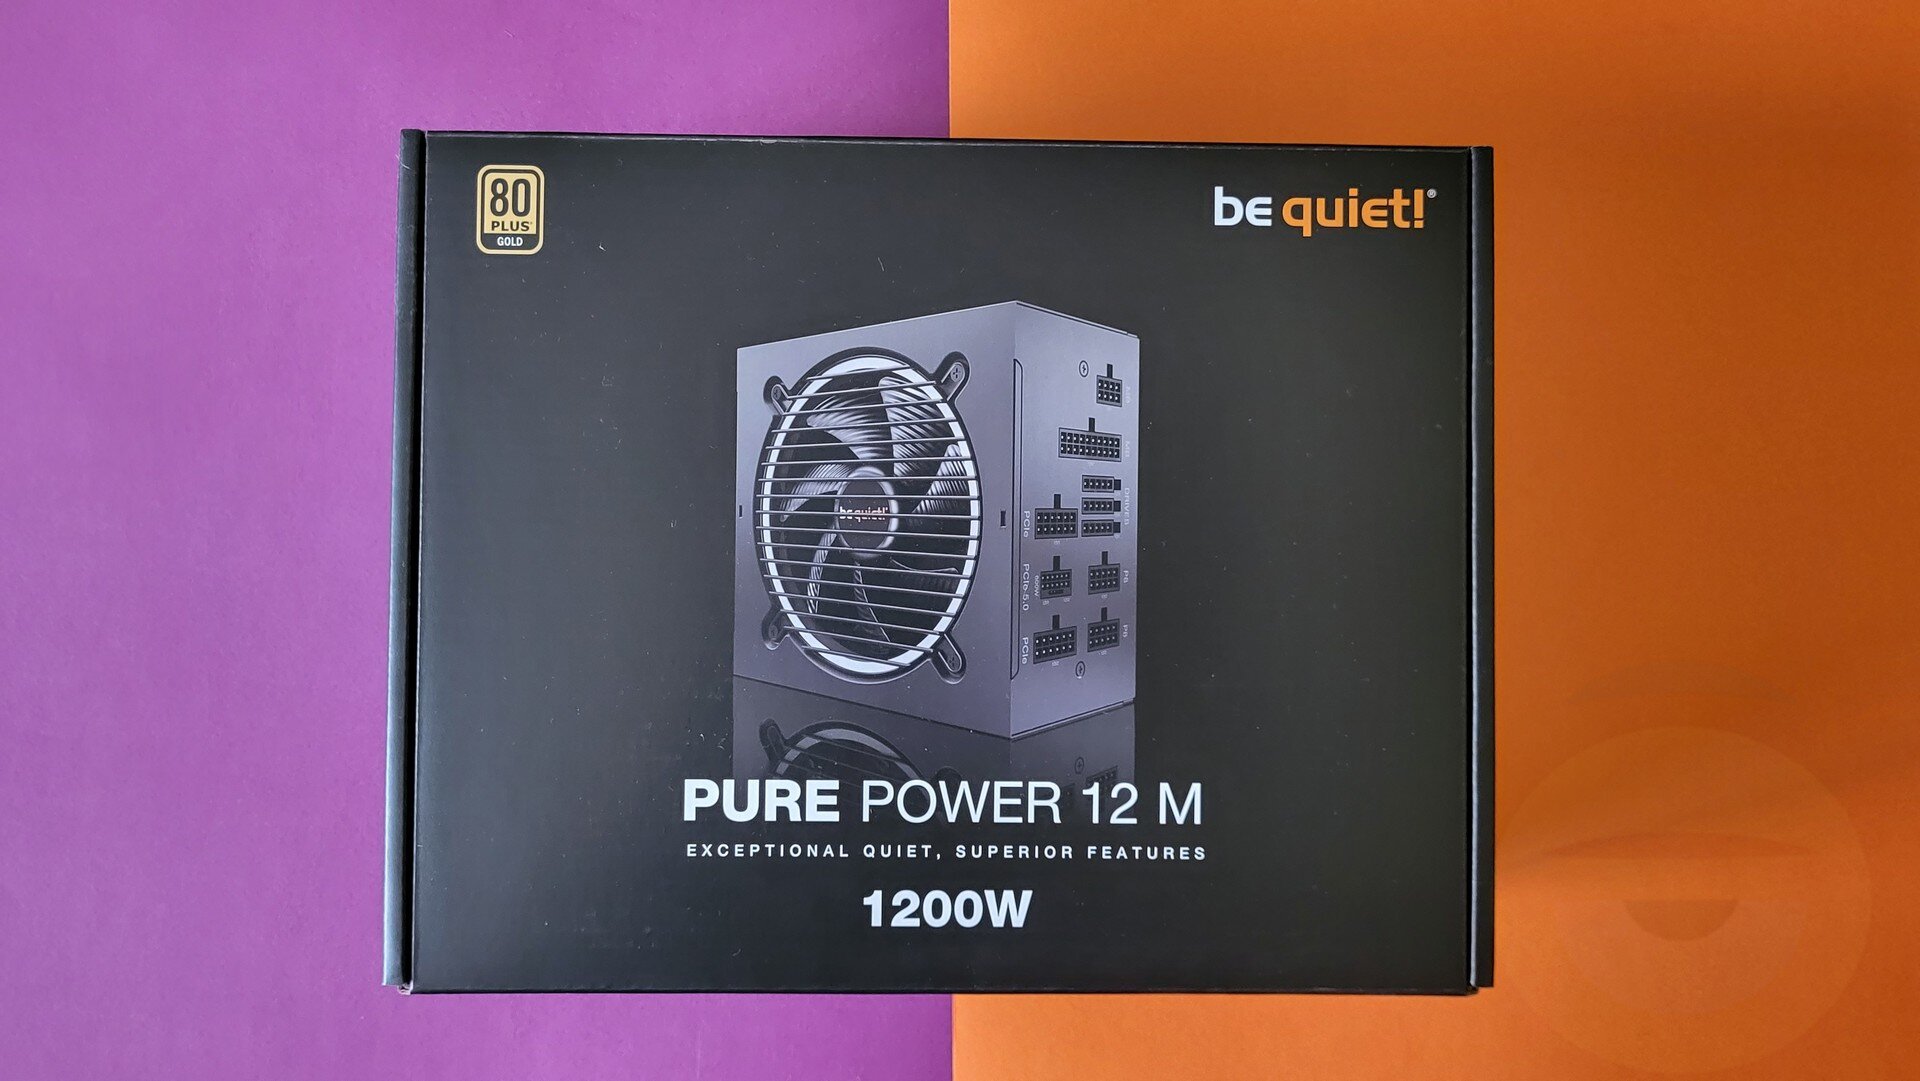 Περισσότερες πληροφορίες για "be quiet! Pure Power 12 M 1200W Παρουσίαση: Full Power!"